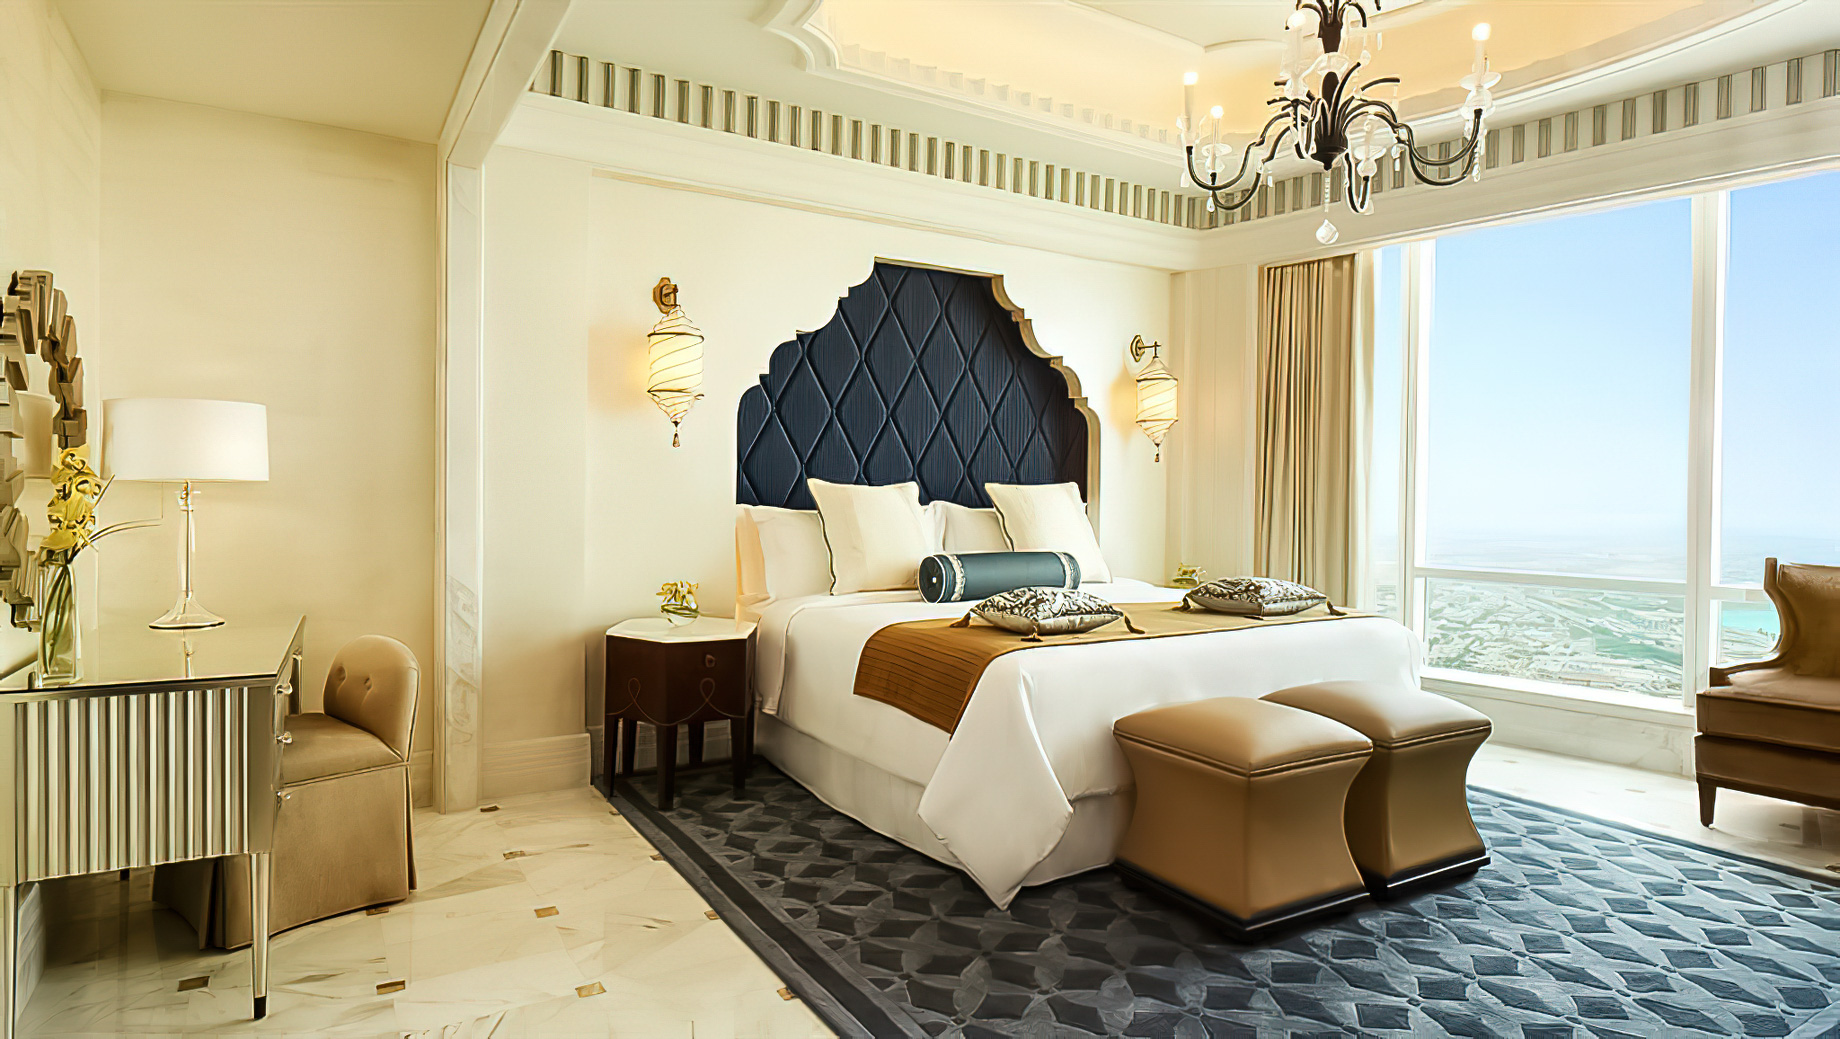 The St. Regis Abu Dhabi Hotel - Abu Dhabi, United Arab Emirates - Al Mushref Suite Bedroom